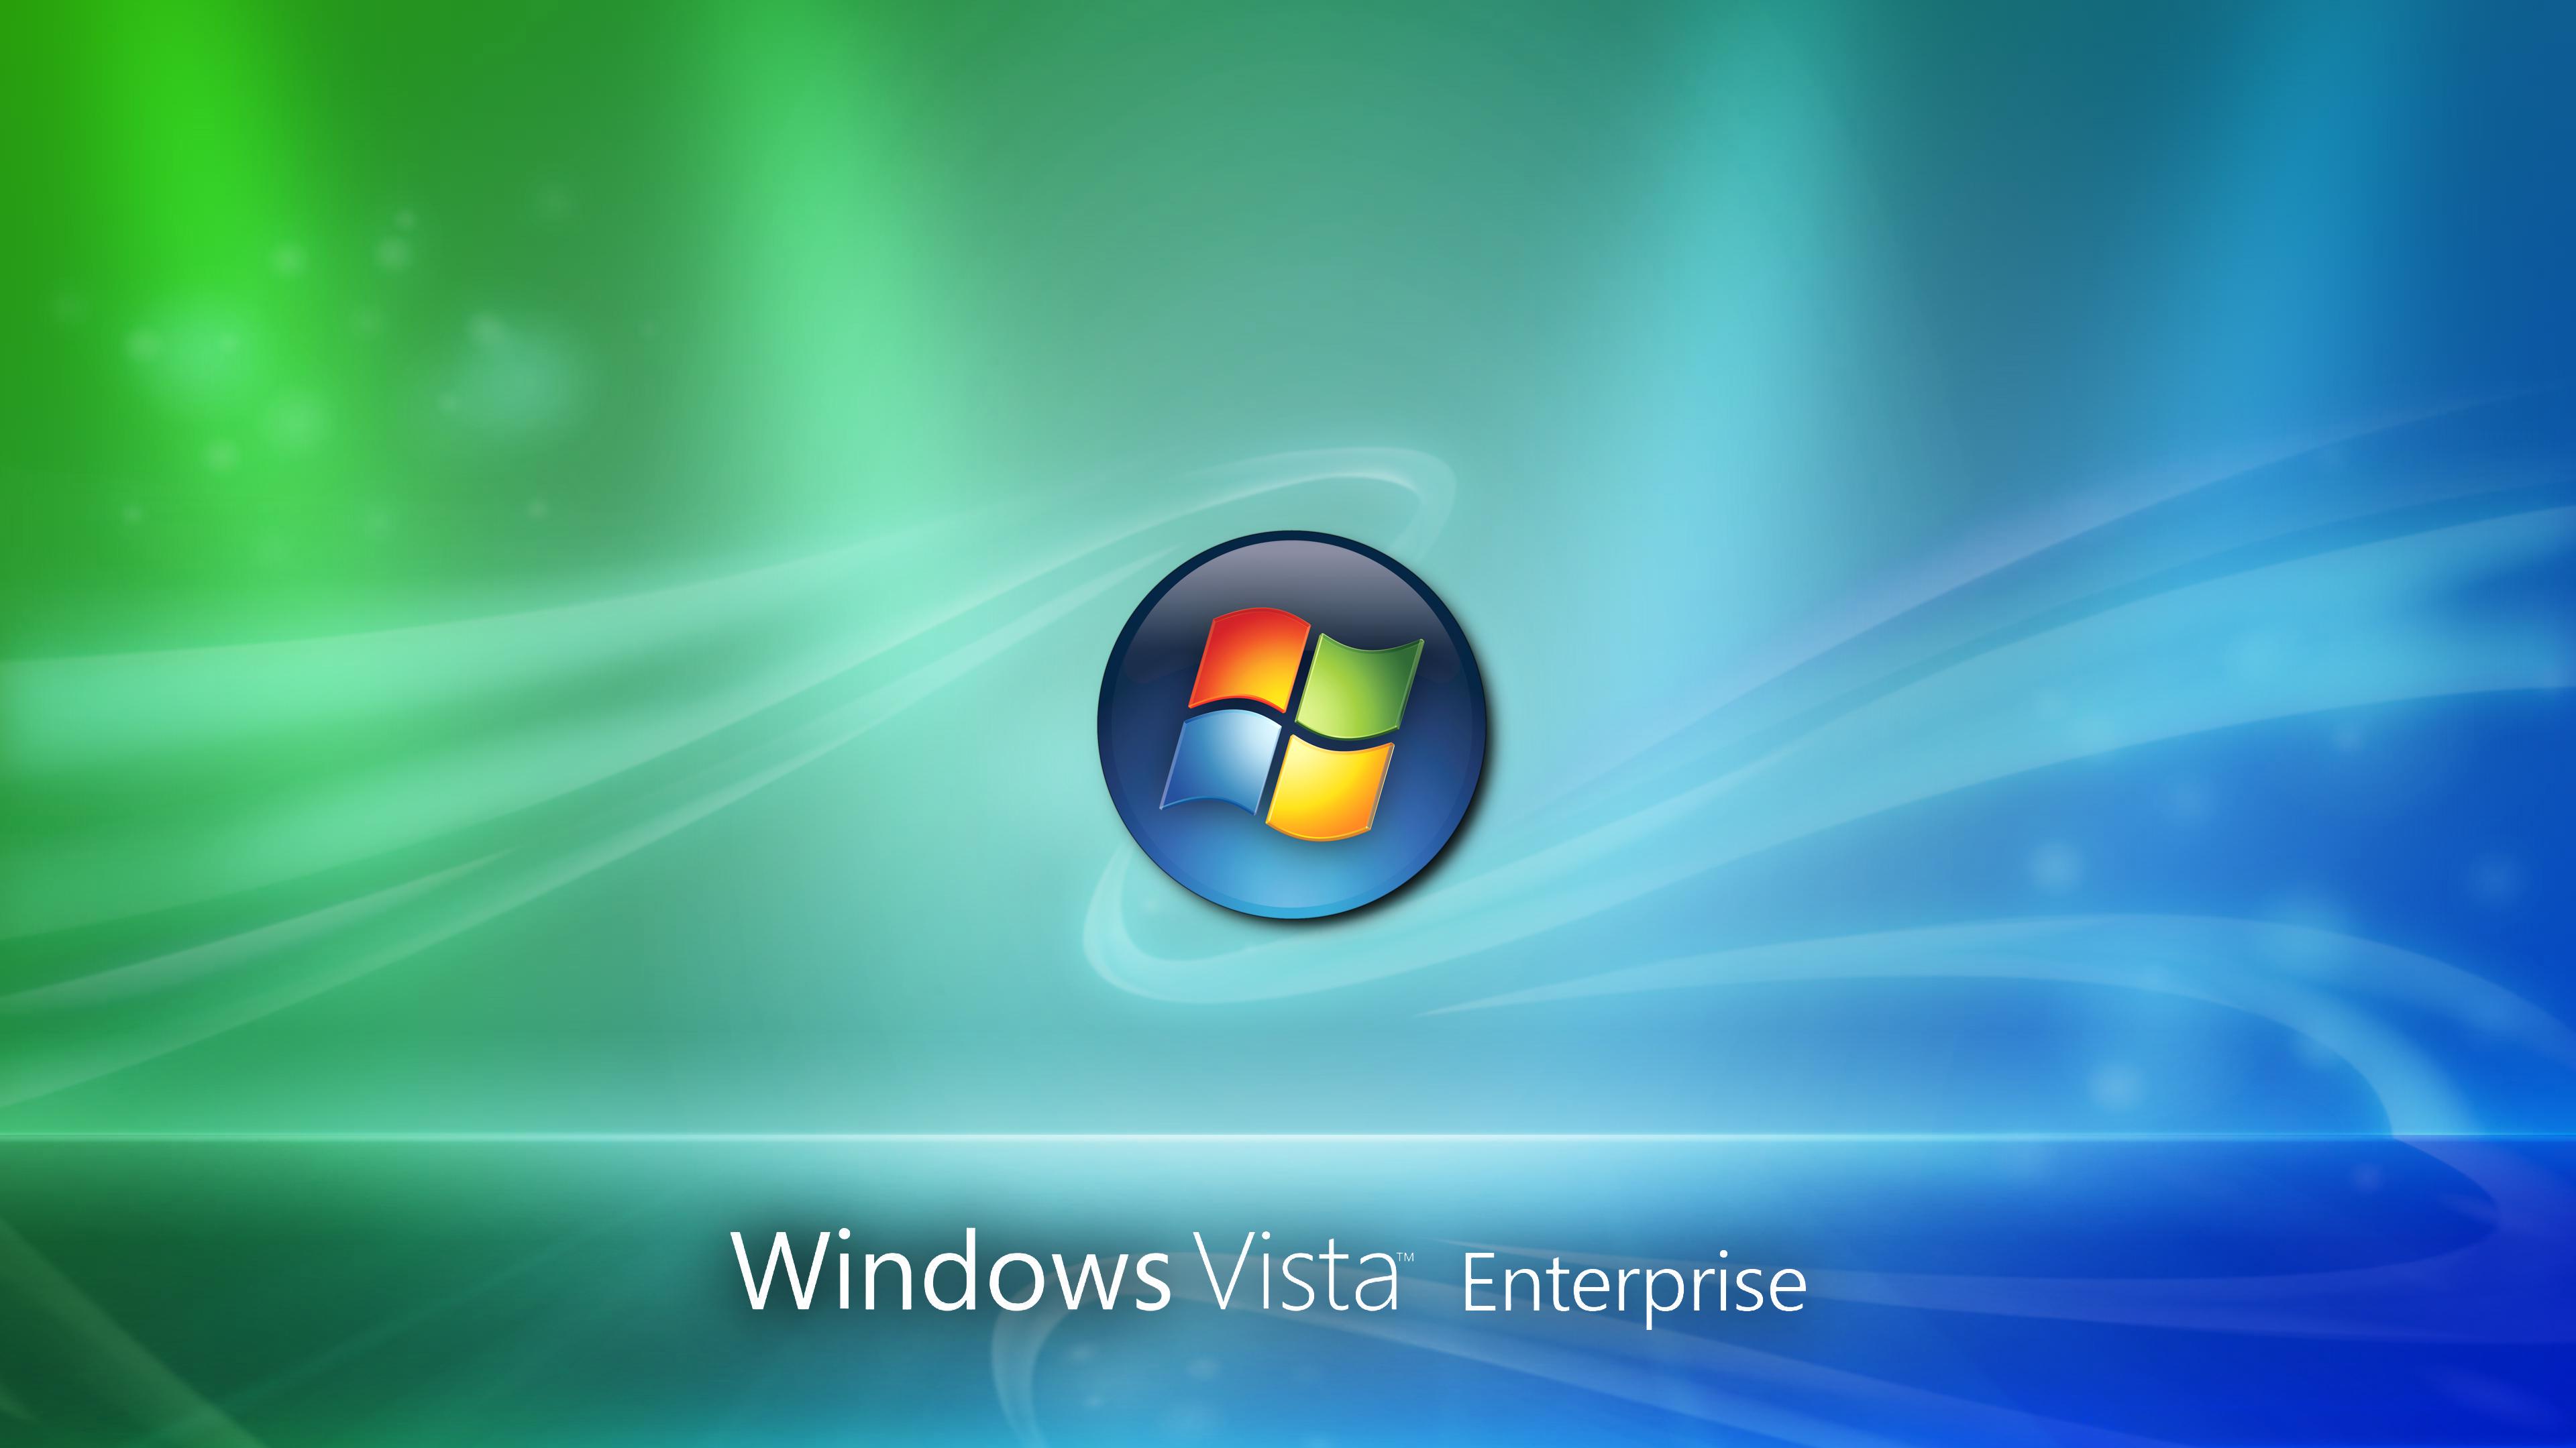 4k Windows Vista Enterprise Wallpaper By Unix1234567890